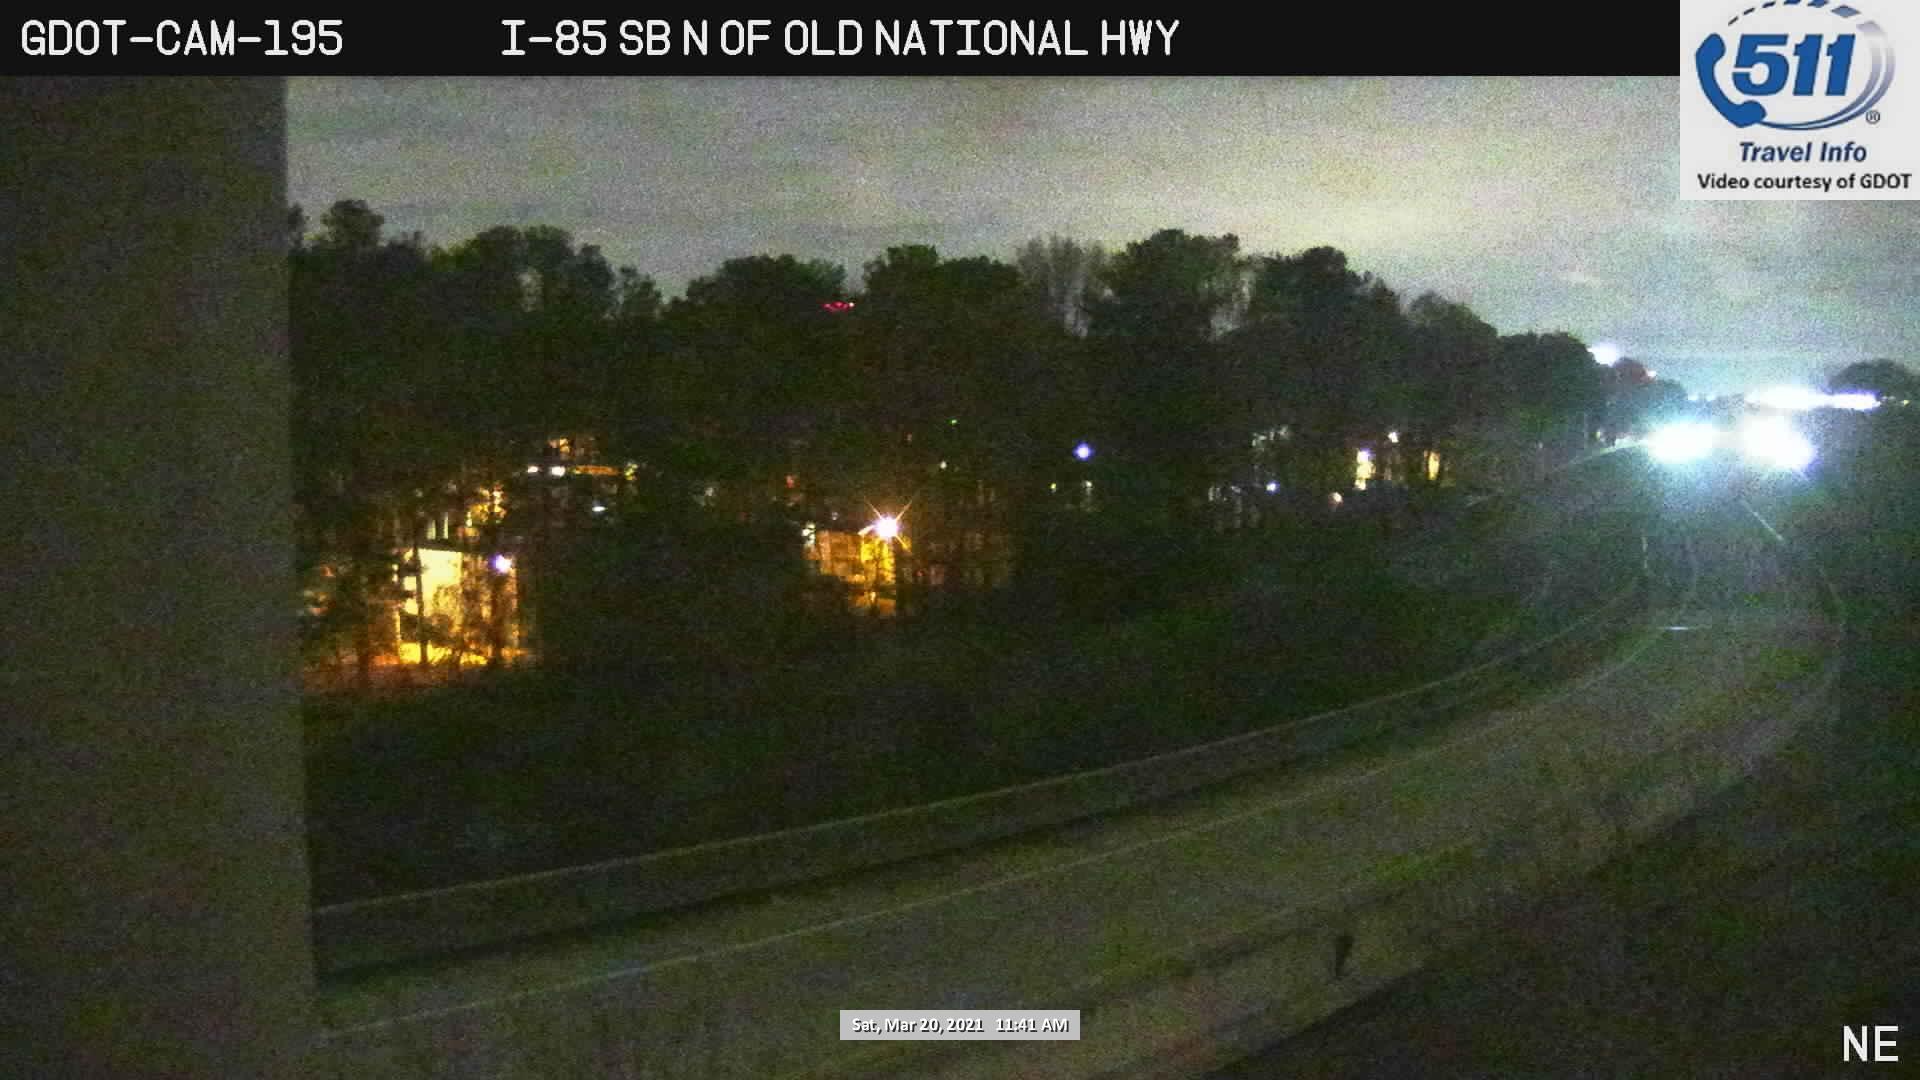 I-85 : N OF OLD NATIONAL HWY (S) (4958) - Atlanta and Georgia